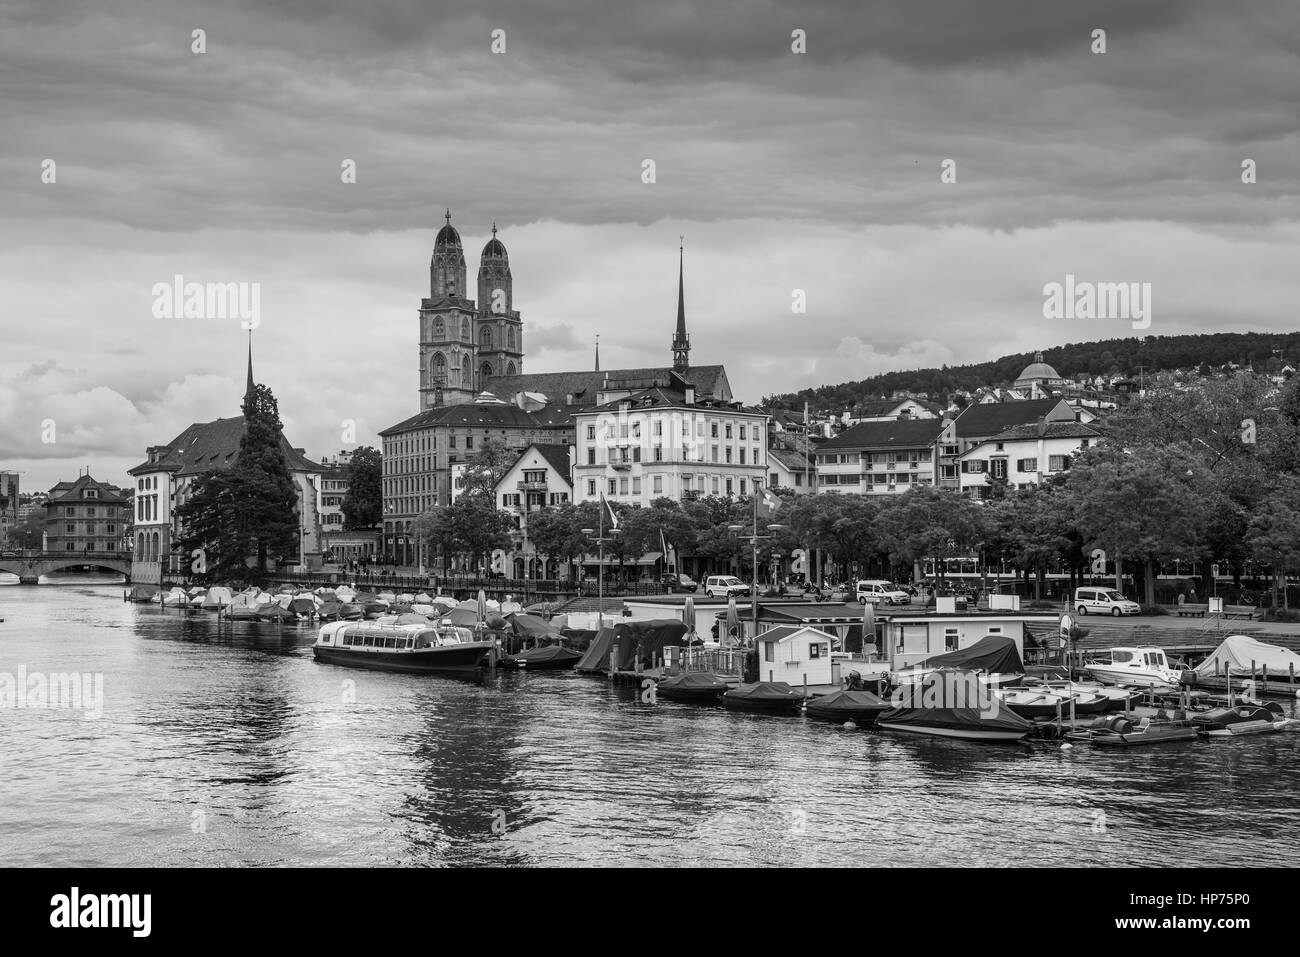 Ansicht der historischen Stadt Zürich mit Grossmünster Kirche und Limmat  Fluß an einem trüben regnerischen Tag, Zürich, Schweiz. Schwarz / weiß  Fotografie Stockfotografie - Alamy